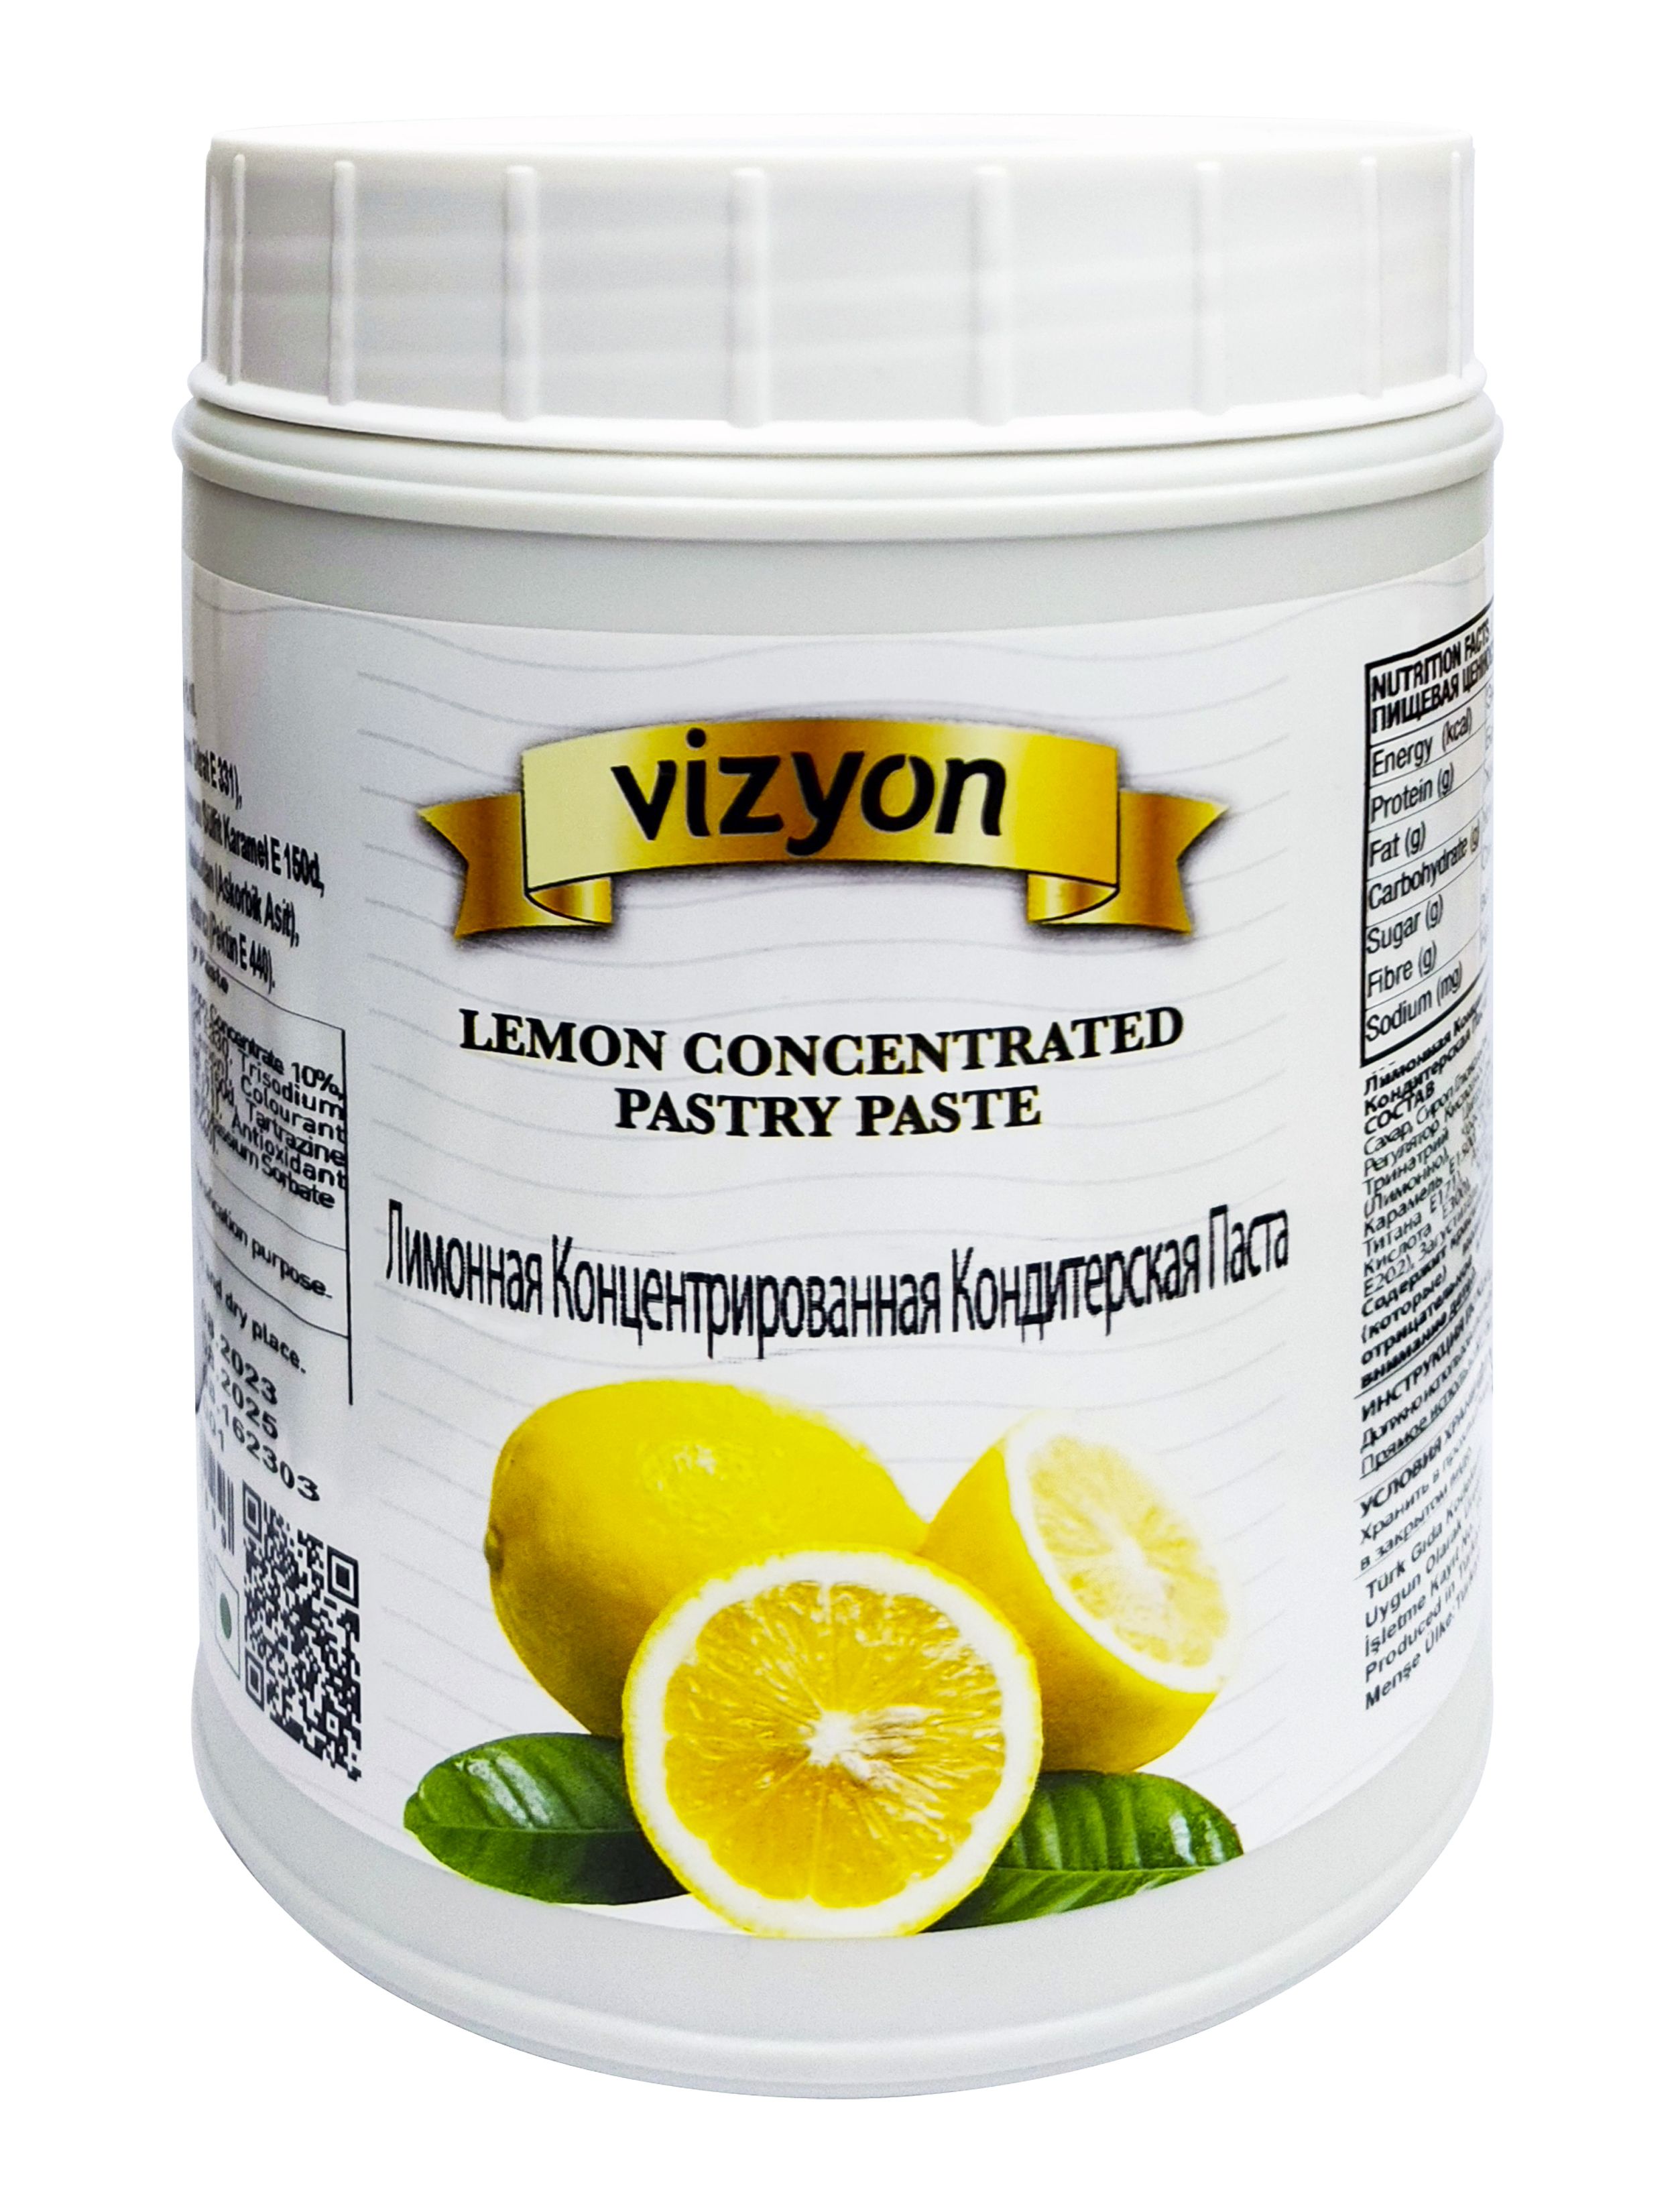 Лимоннаяконцентрированнаятермостабильнаякондитерскаяпаста,"Vizyon",LemonConcentratedPastryPaste,1000гр.Турция